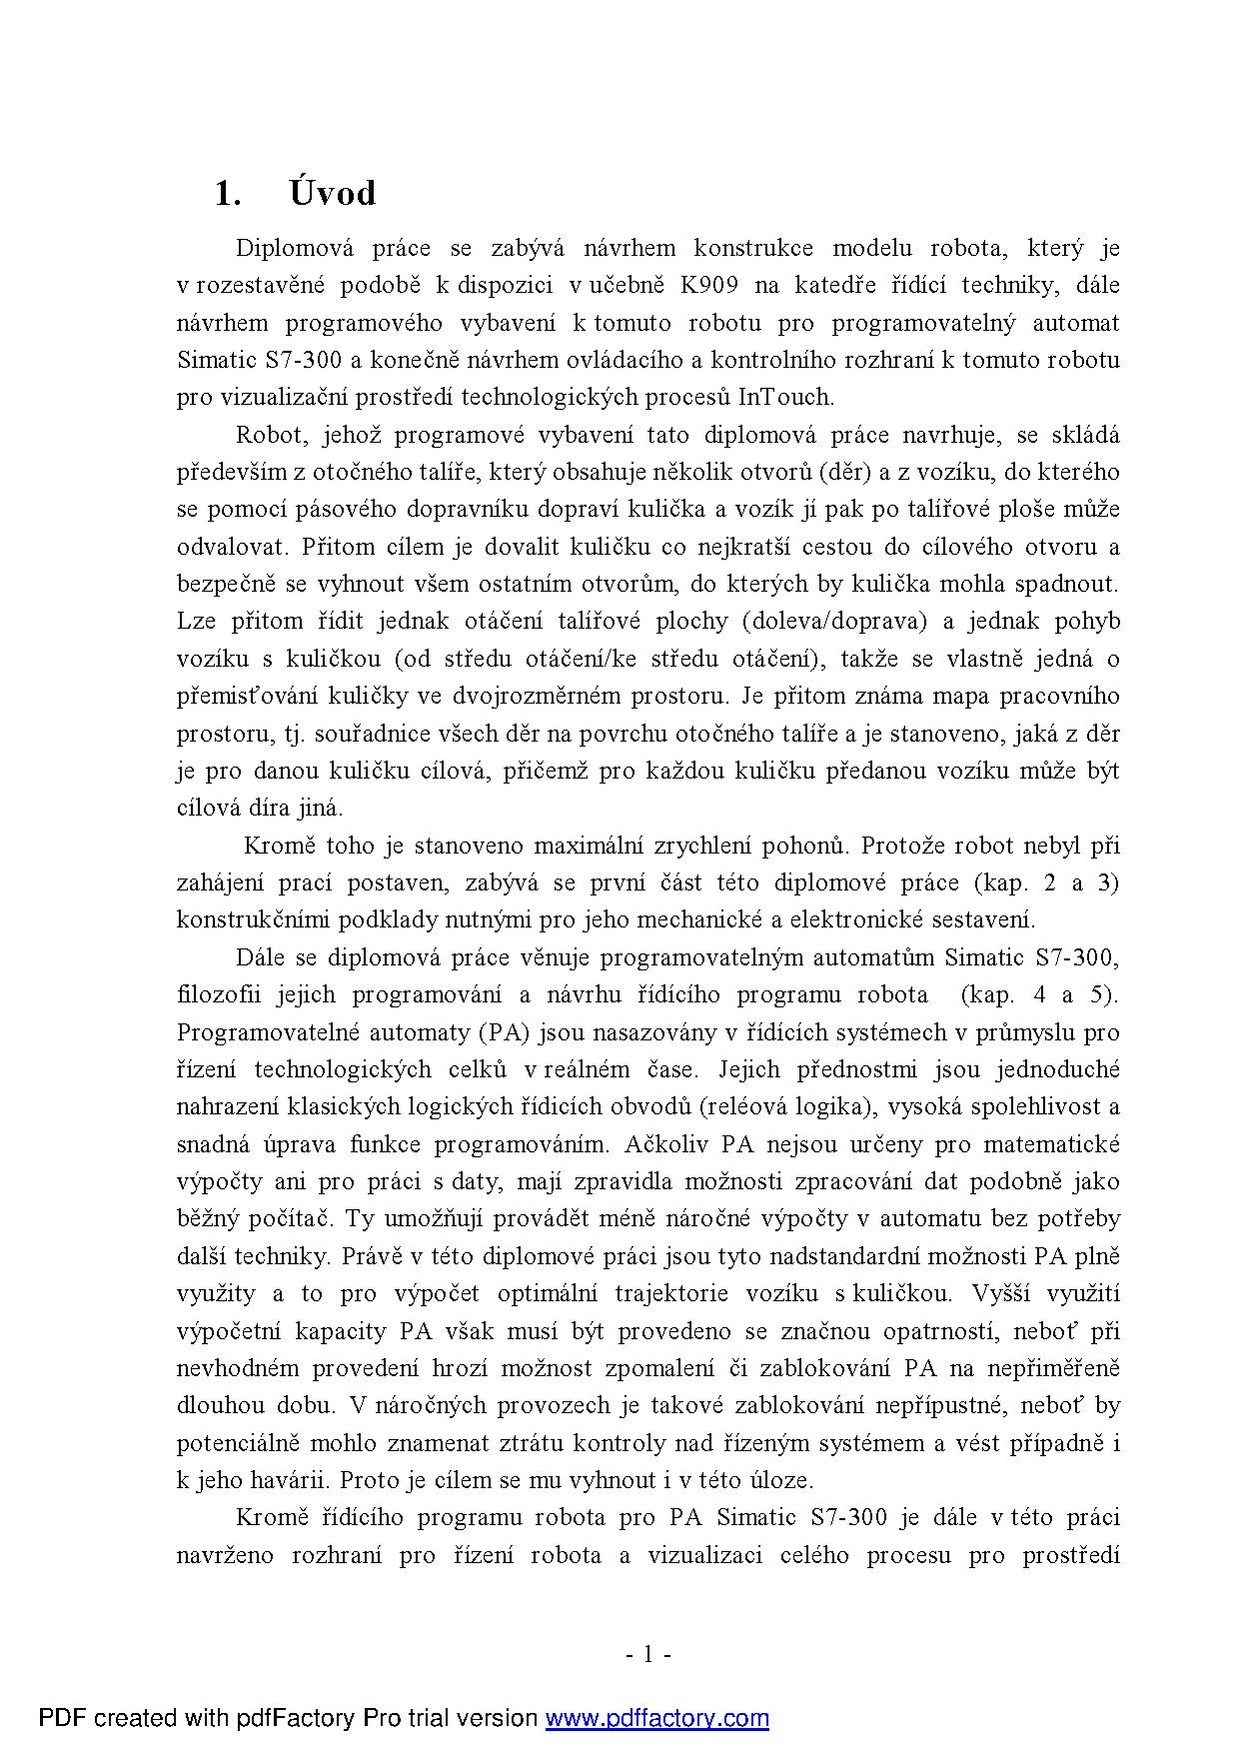 Dp 2004 oesterreicher karel.pdf